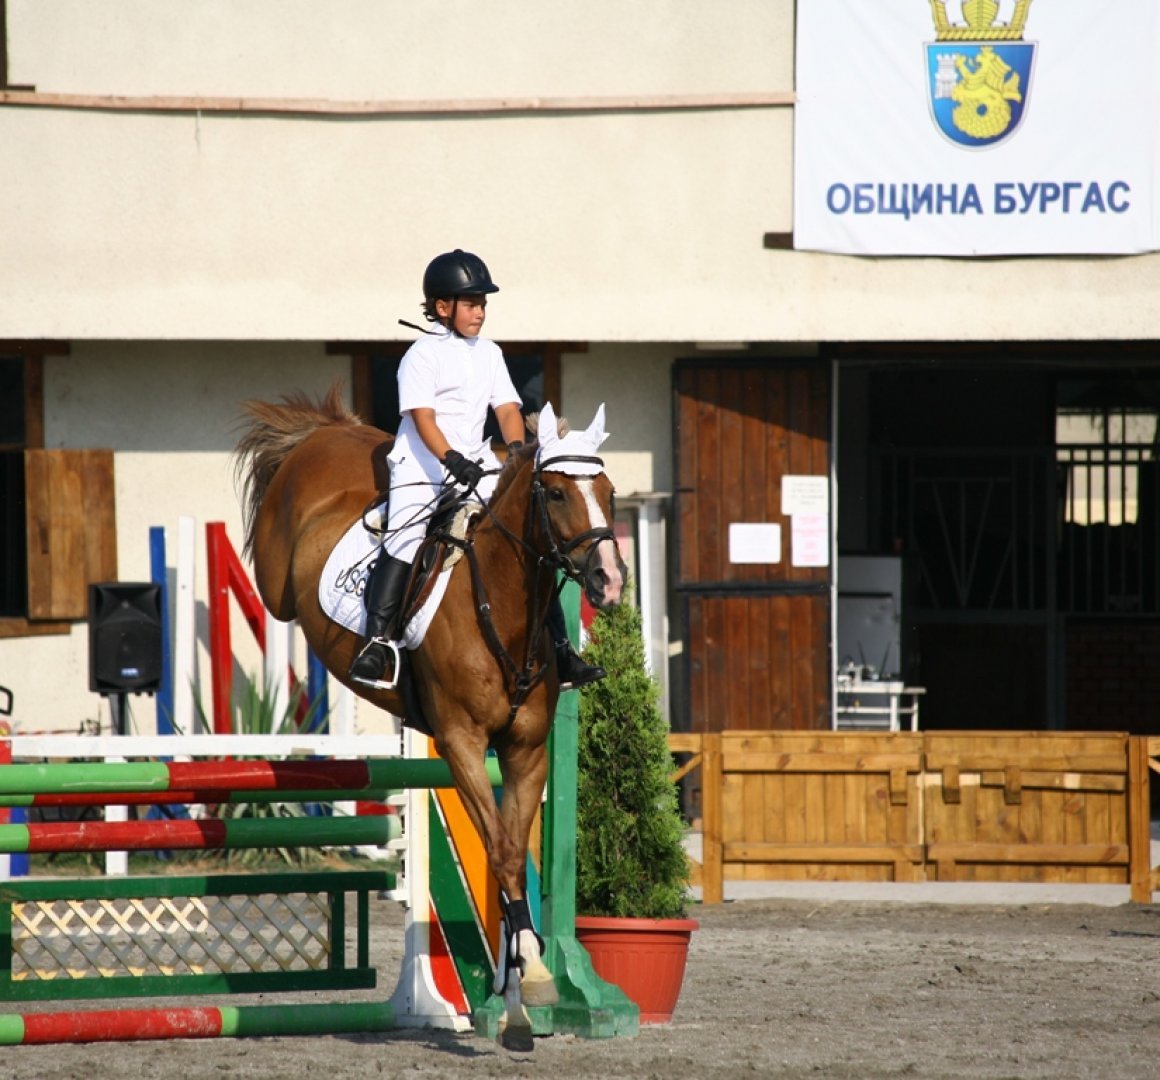 Първата рожба на конната база - Мона Лиза, се завръща у дома за „Купа Бургас 2022“ - E-Burgas.com